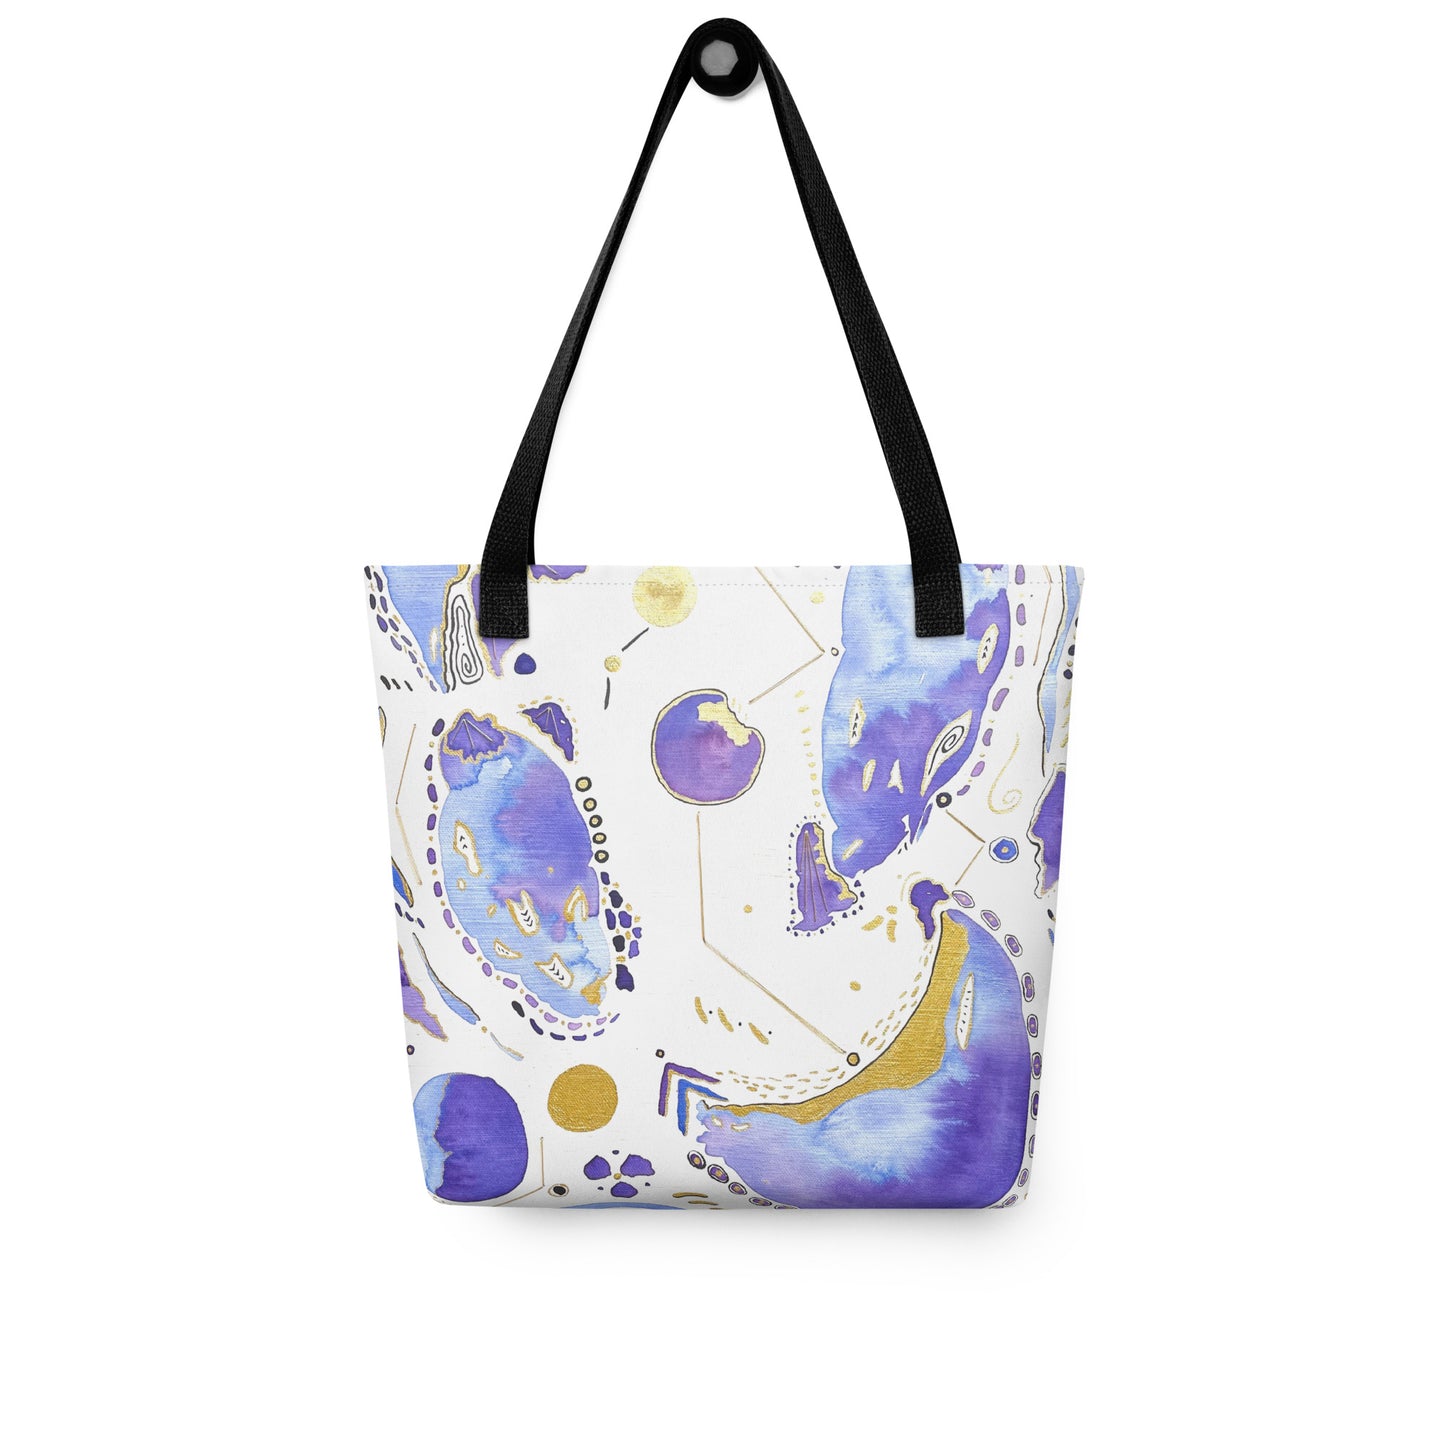 Cosmic Ocean Tote Bag (Light)